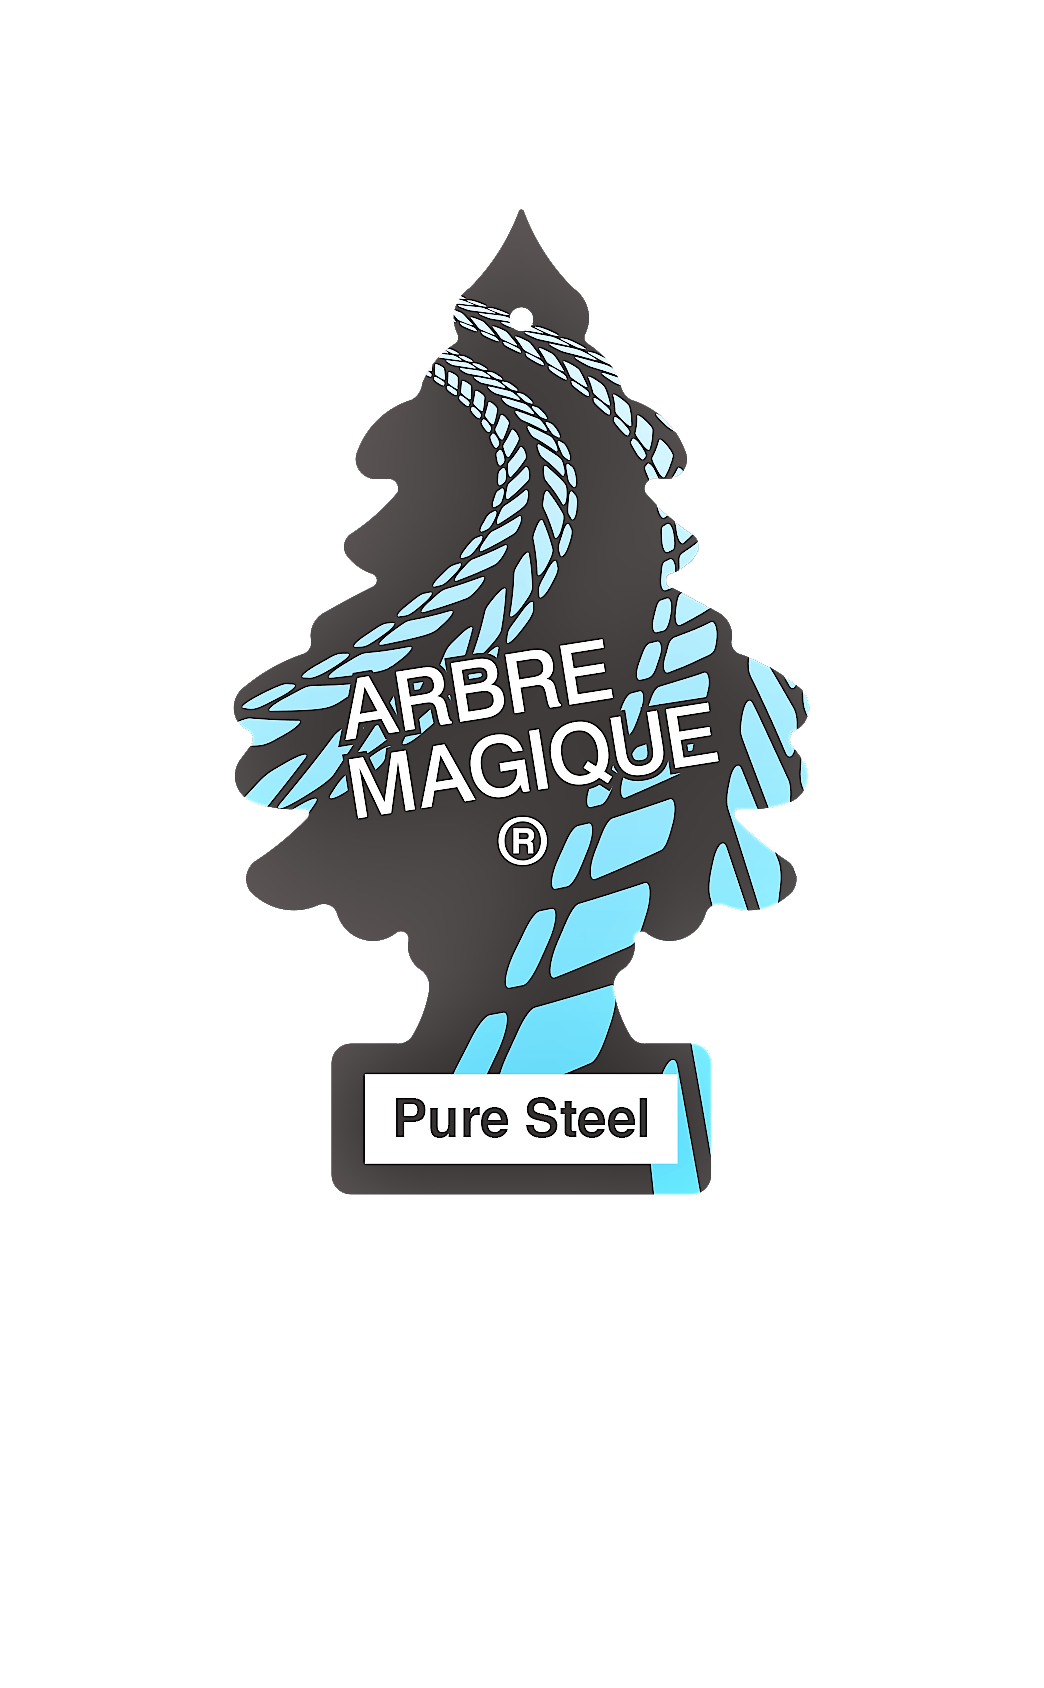 Arbre Magique Racing, nuova linea per gli appassionati di motori